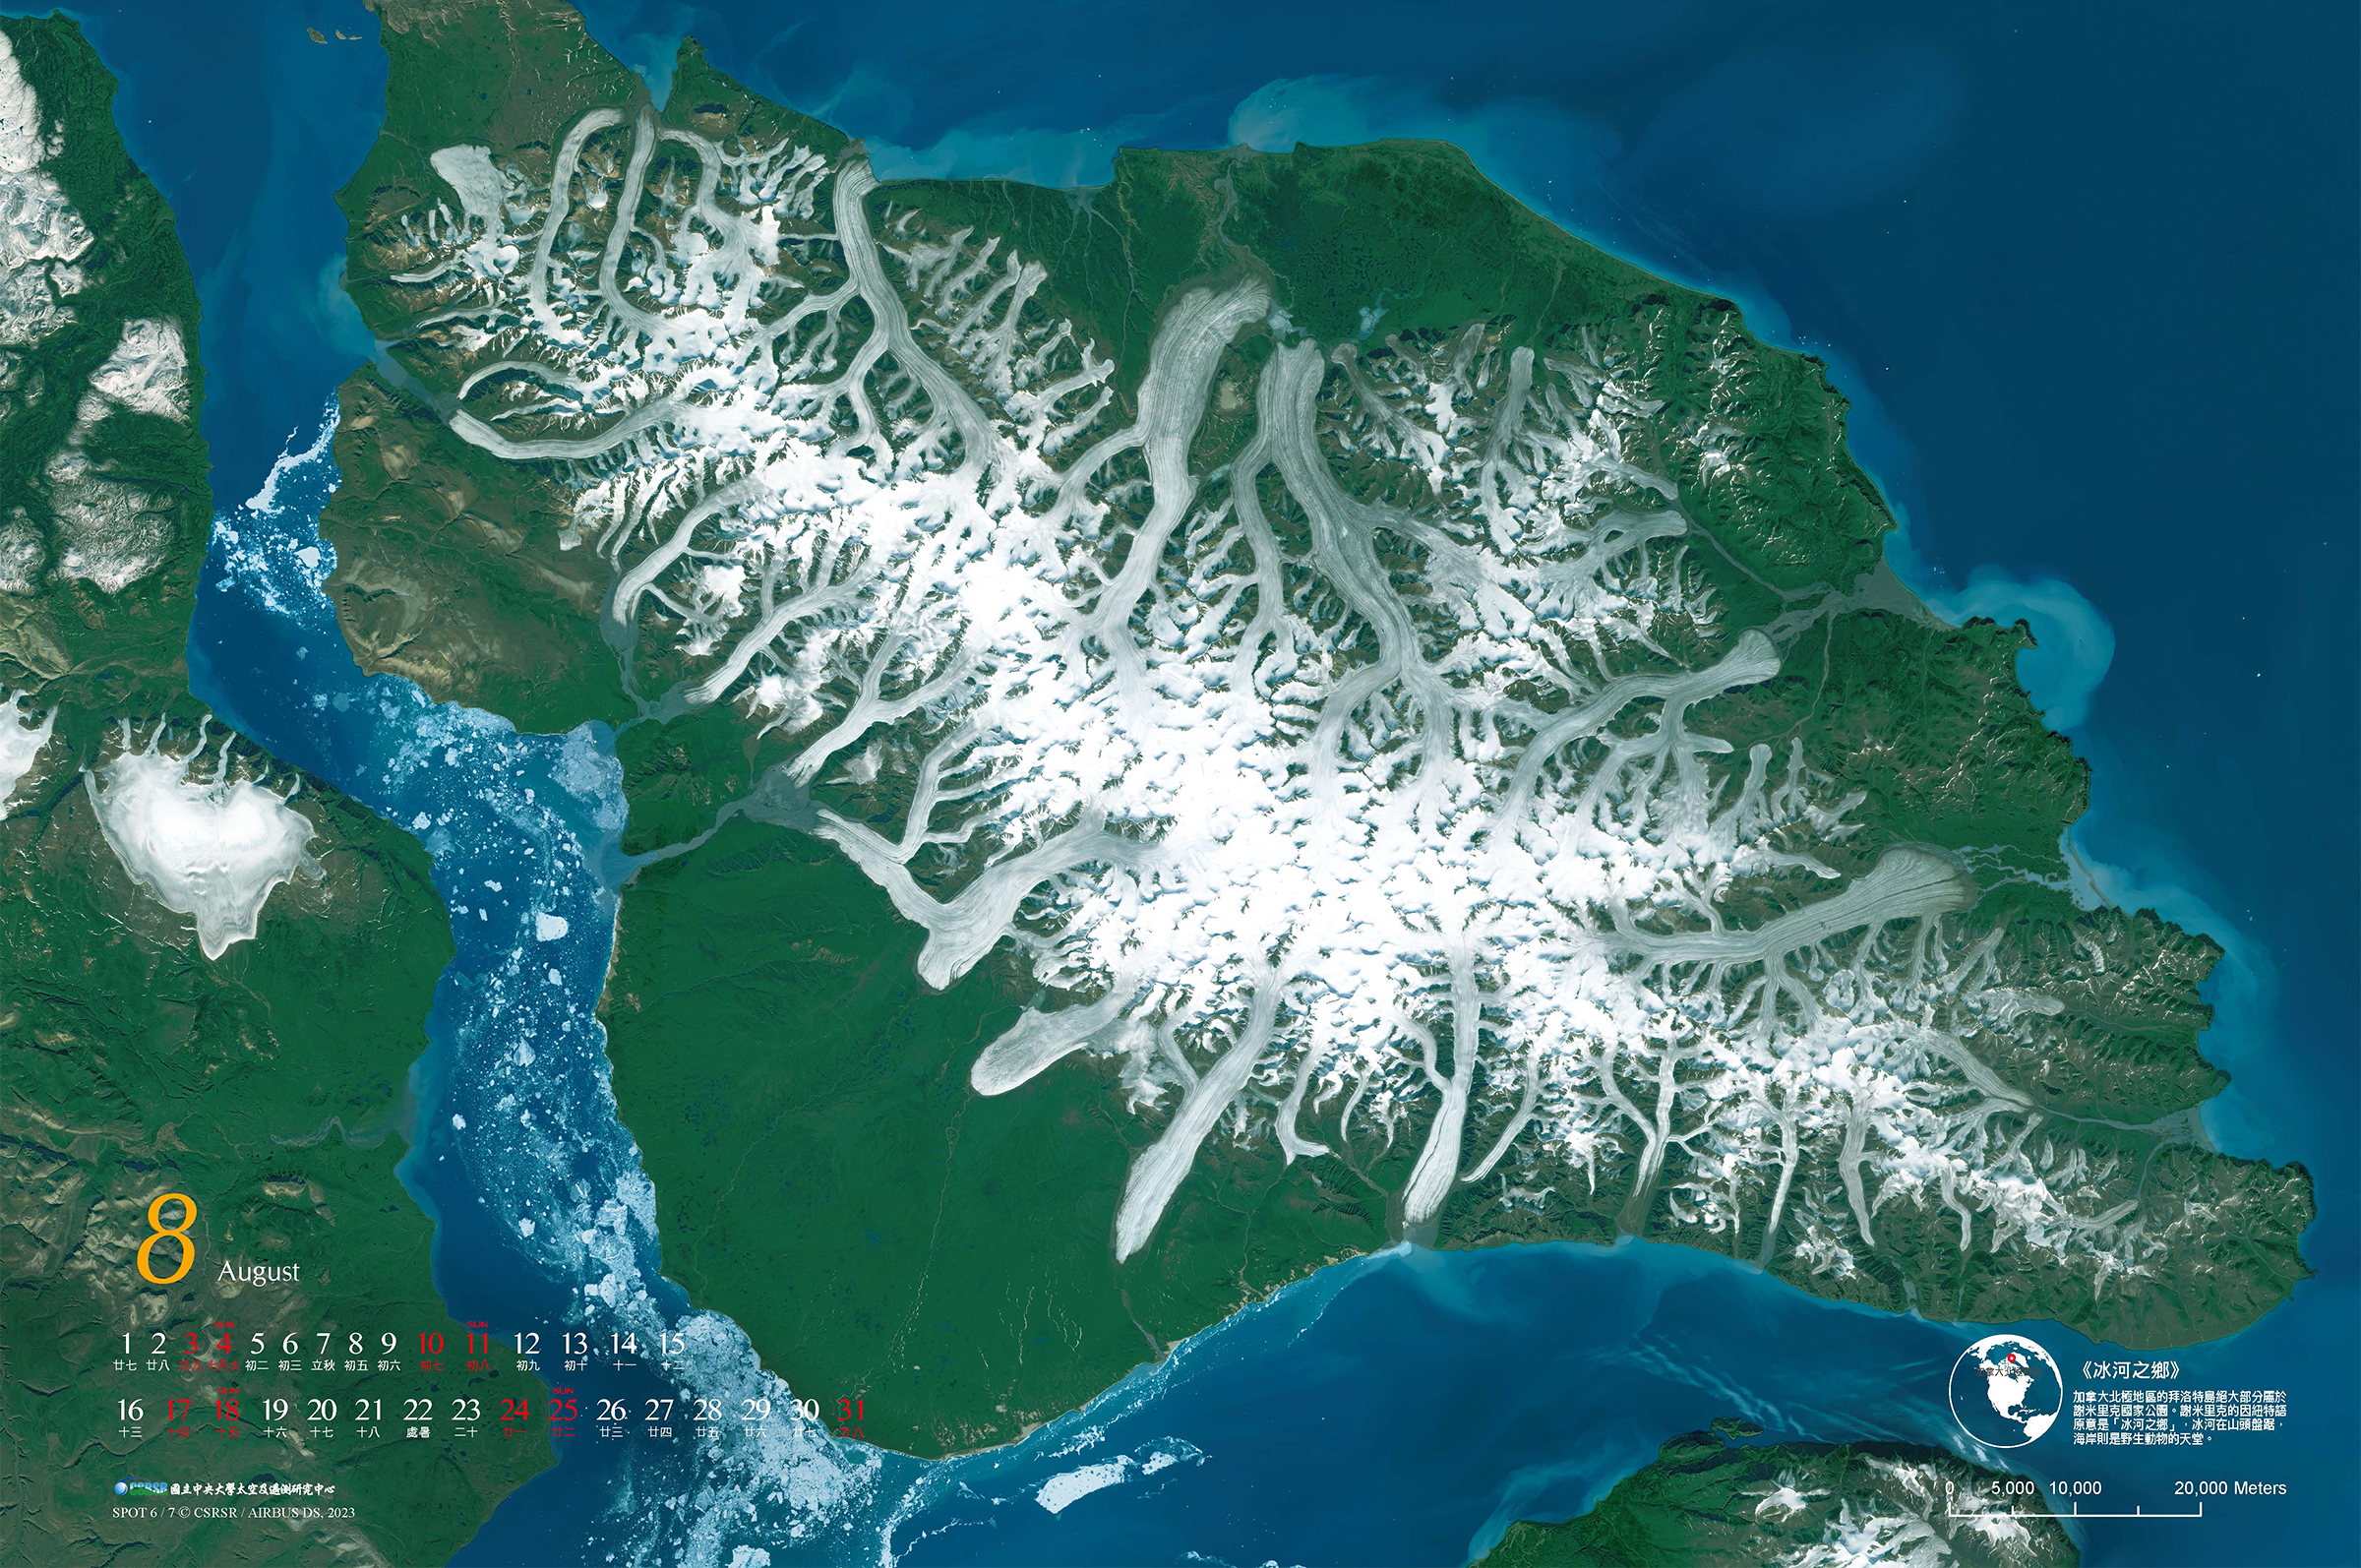 八月《冰河之鄉》，拍攝的是加拿大北極群島，冰河在山頭盤踞，海岸則是野生動物的天堂。照片中央大學太空及遙測研究中心提供